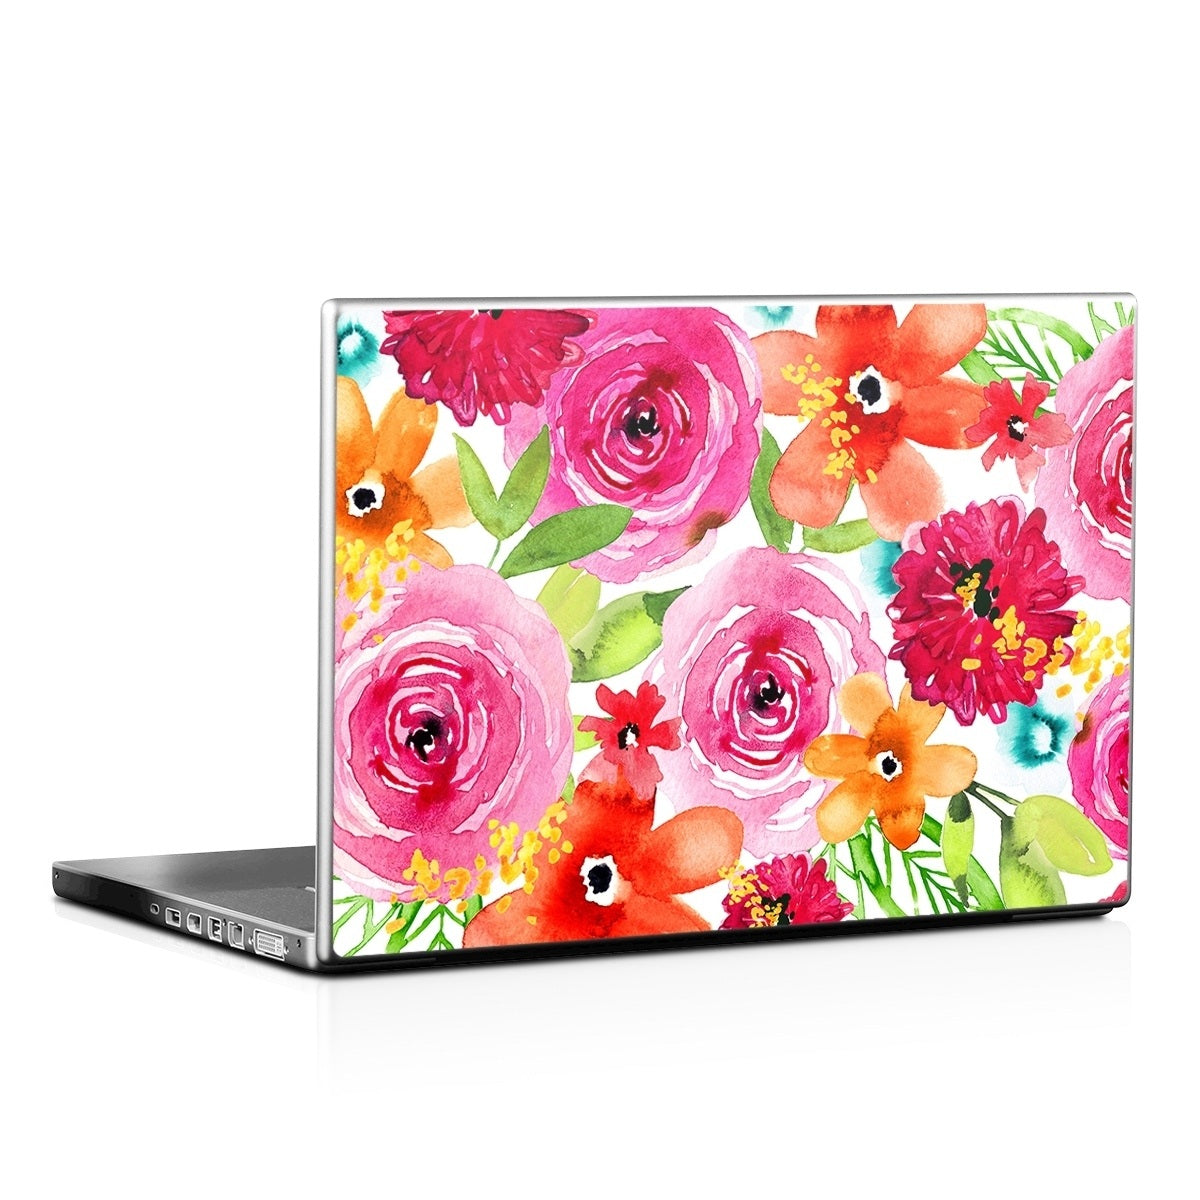 Floral Pop - Laptop Lid Skin